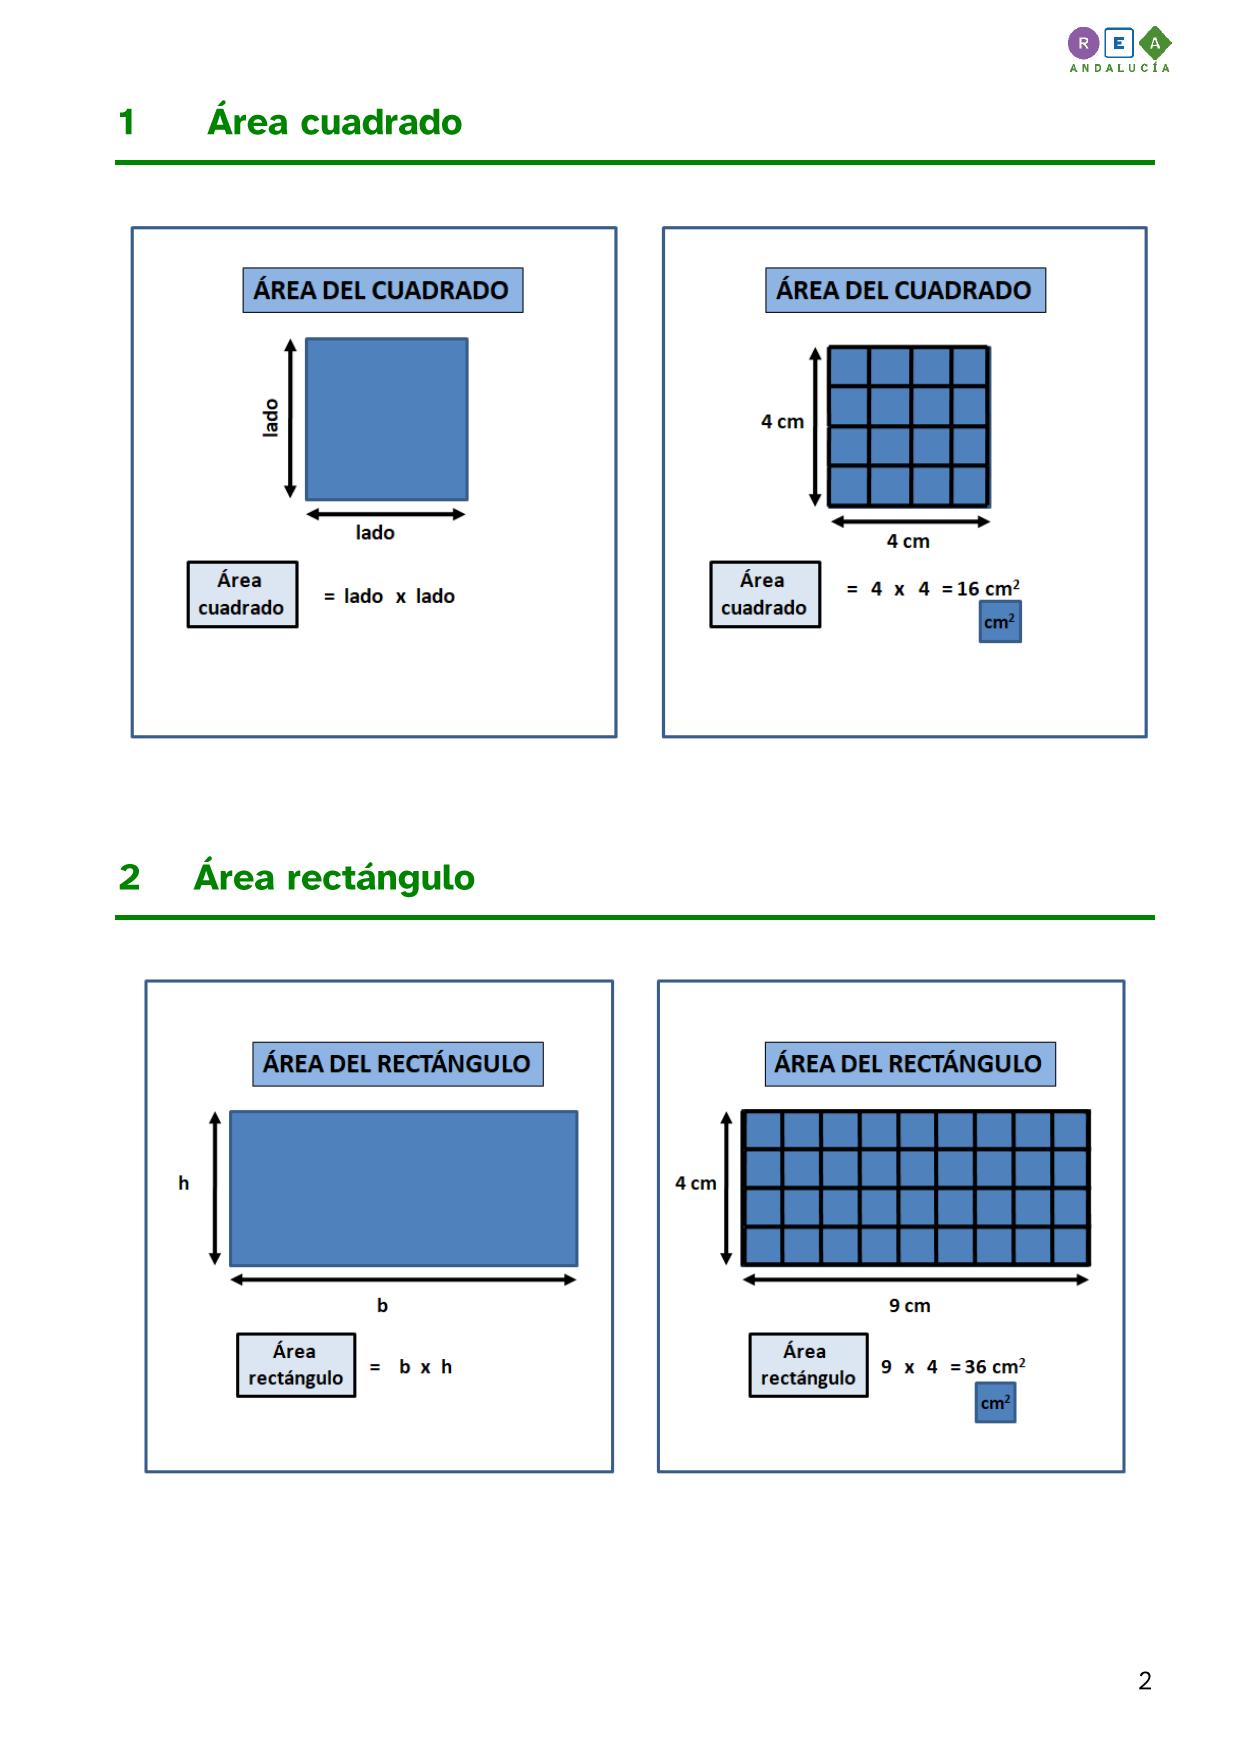 imagen perteneciente a la segunda página del documento PDF 'Cálculos de áreas de figuras planas'